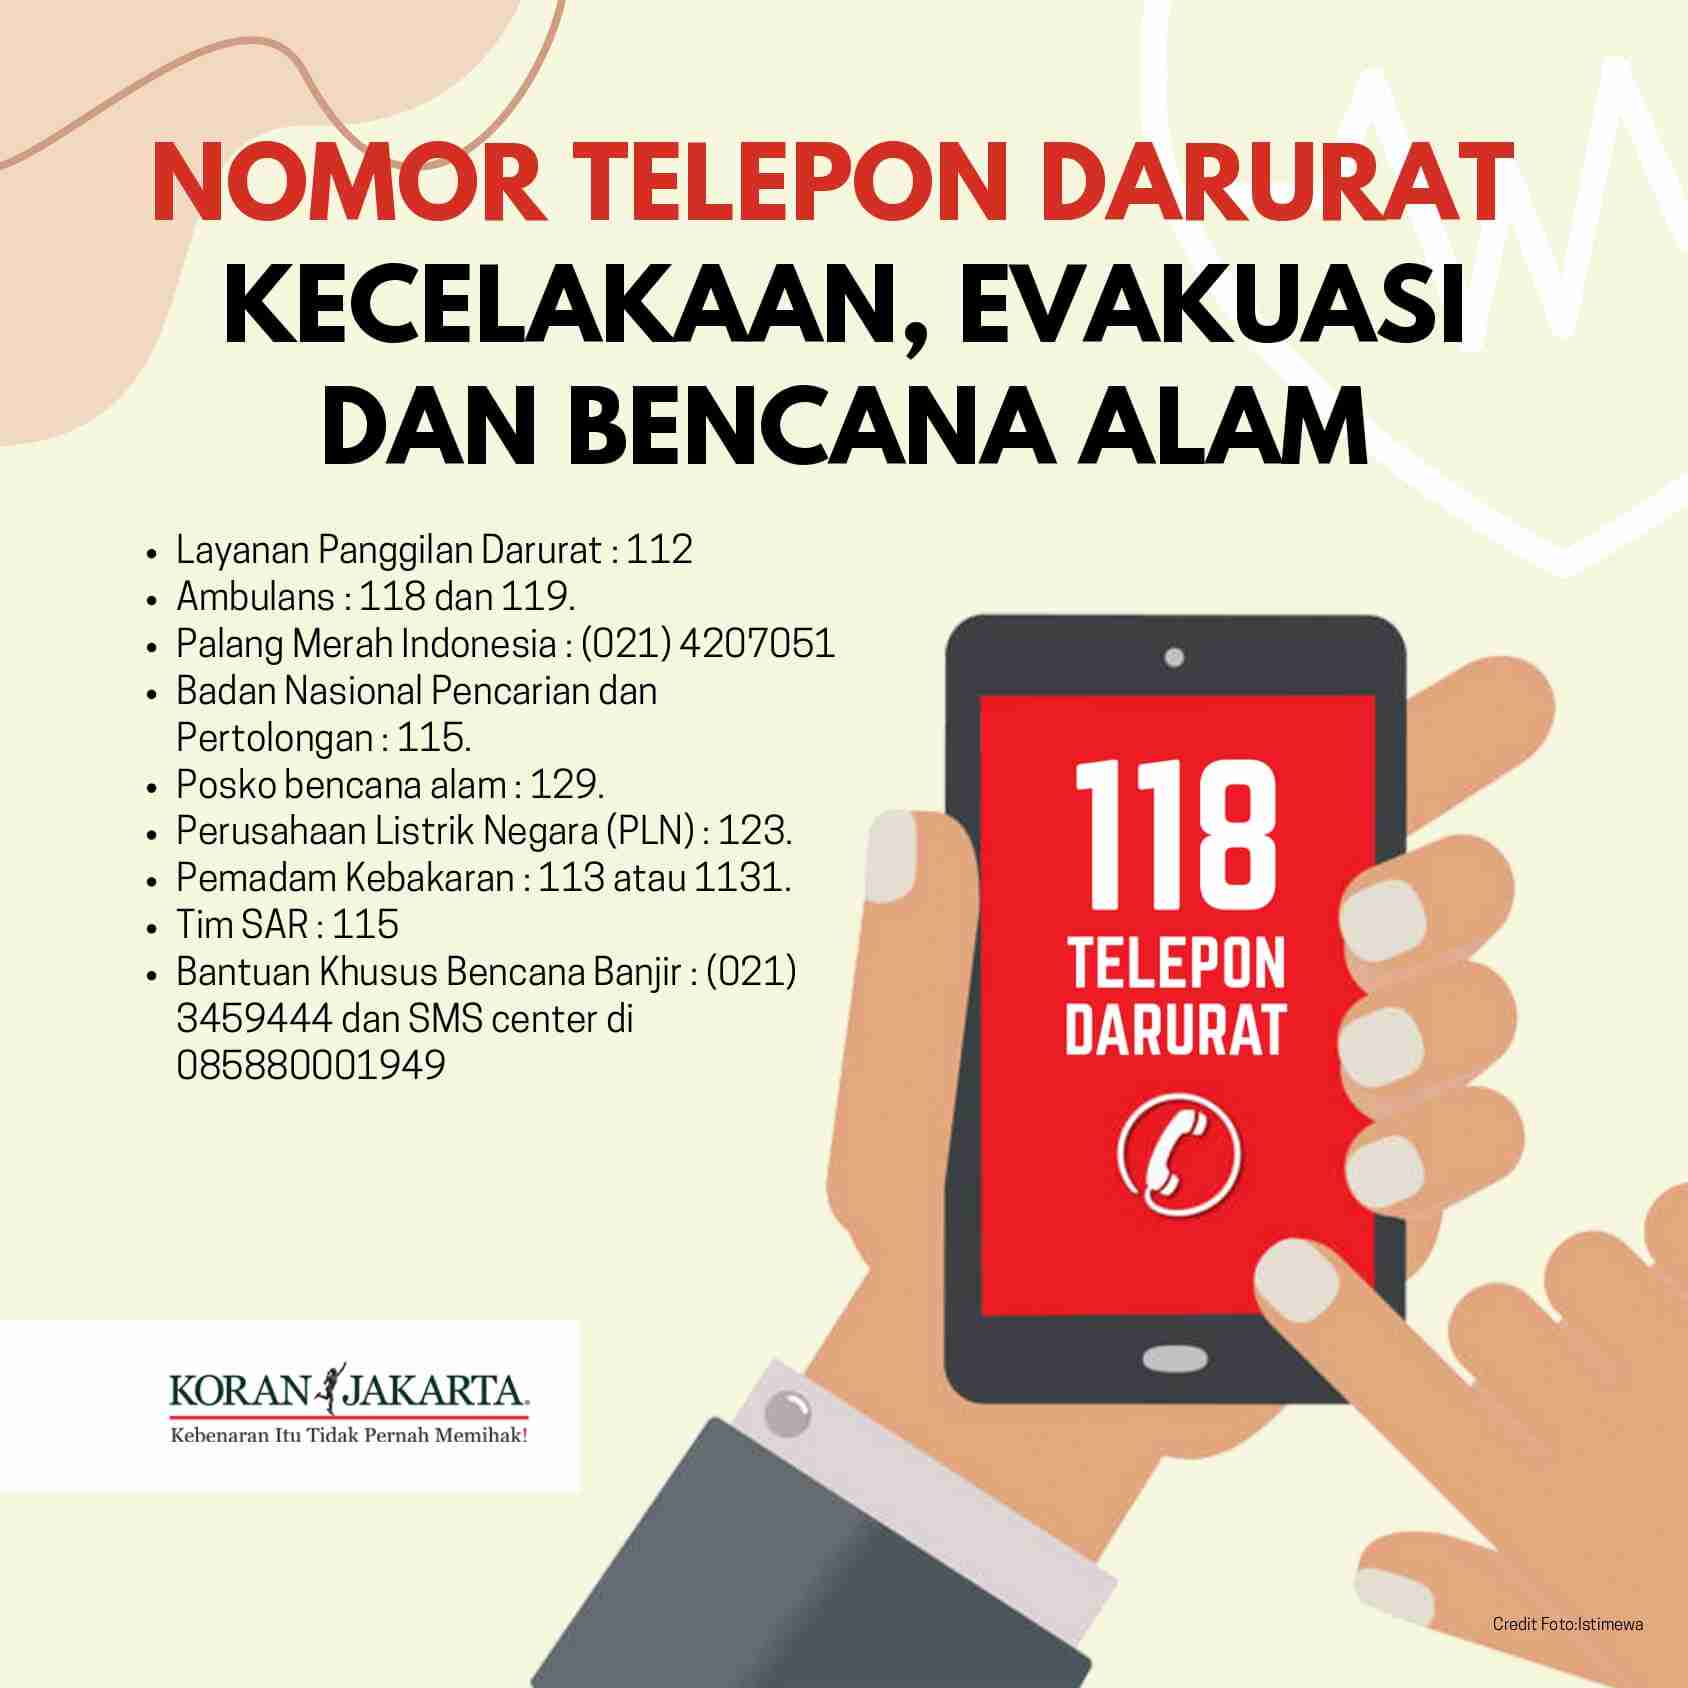 Nomor Darurat Di Indonesia Infografis Koran Jakarta